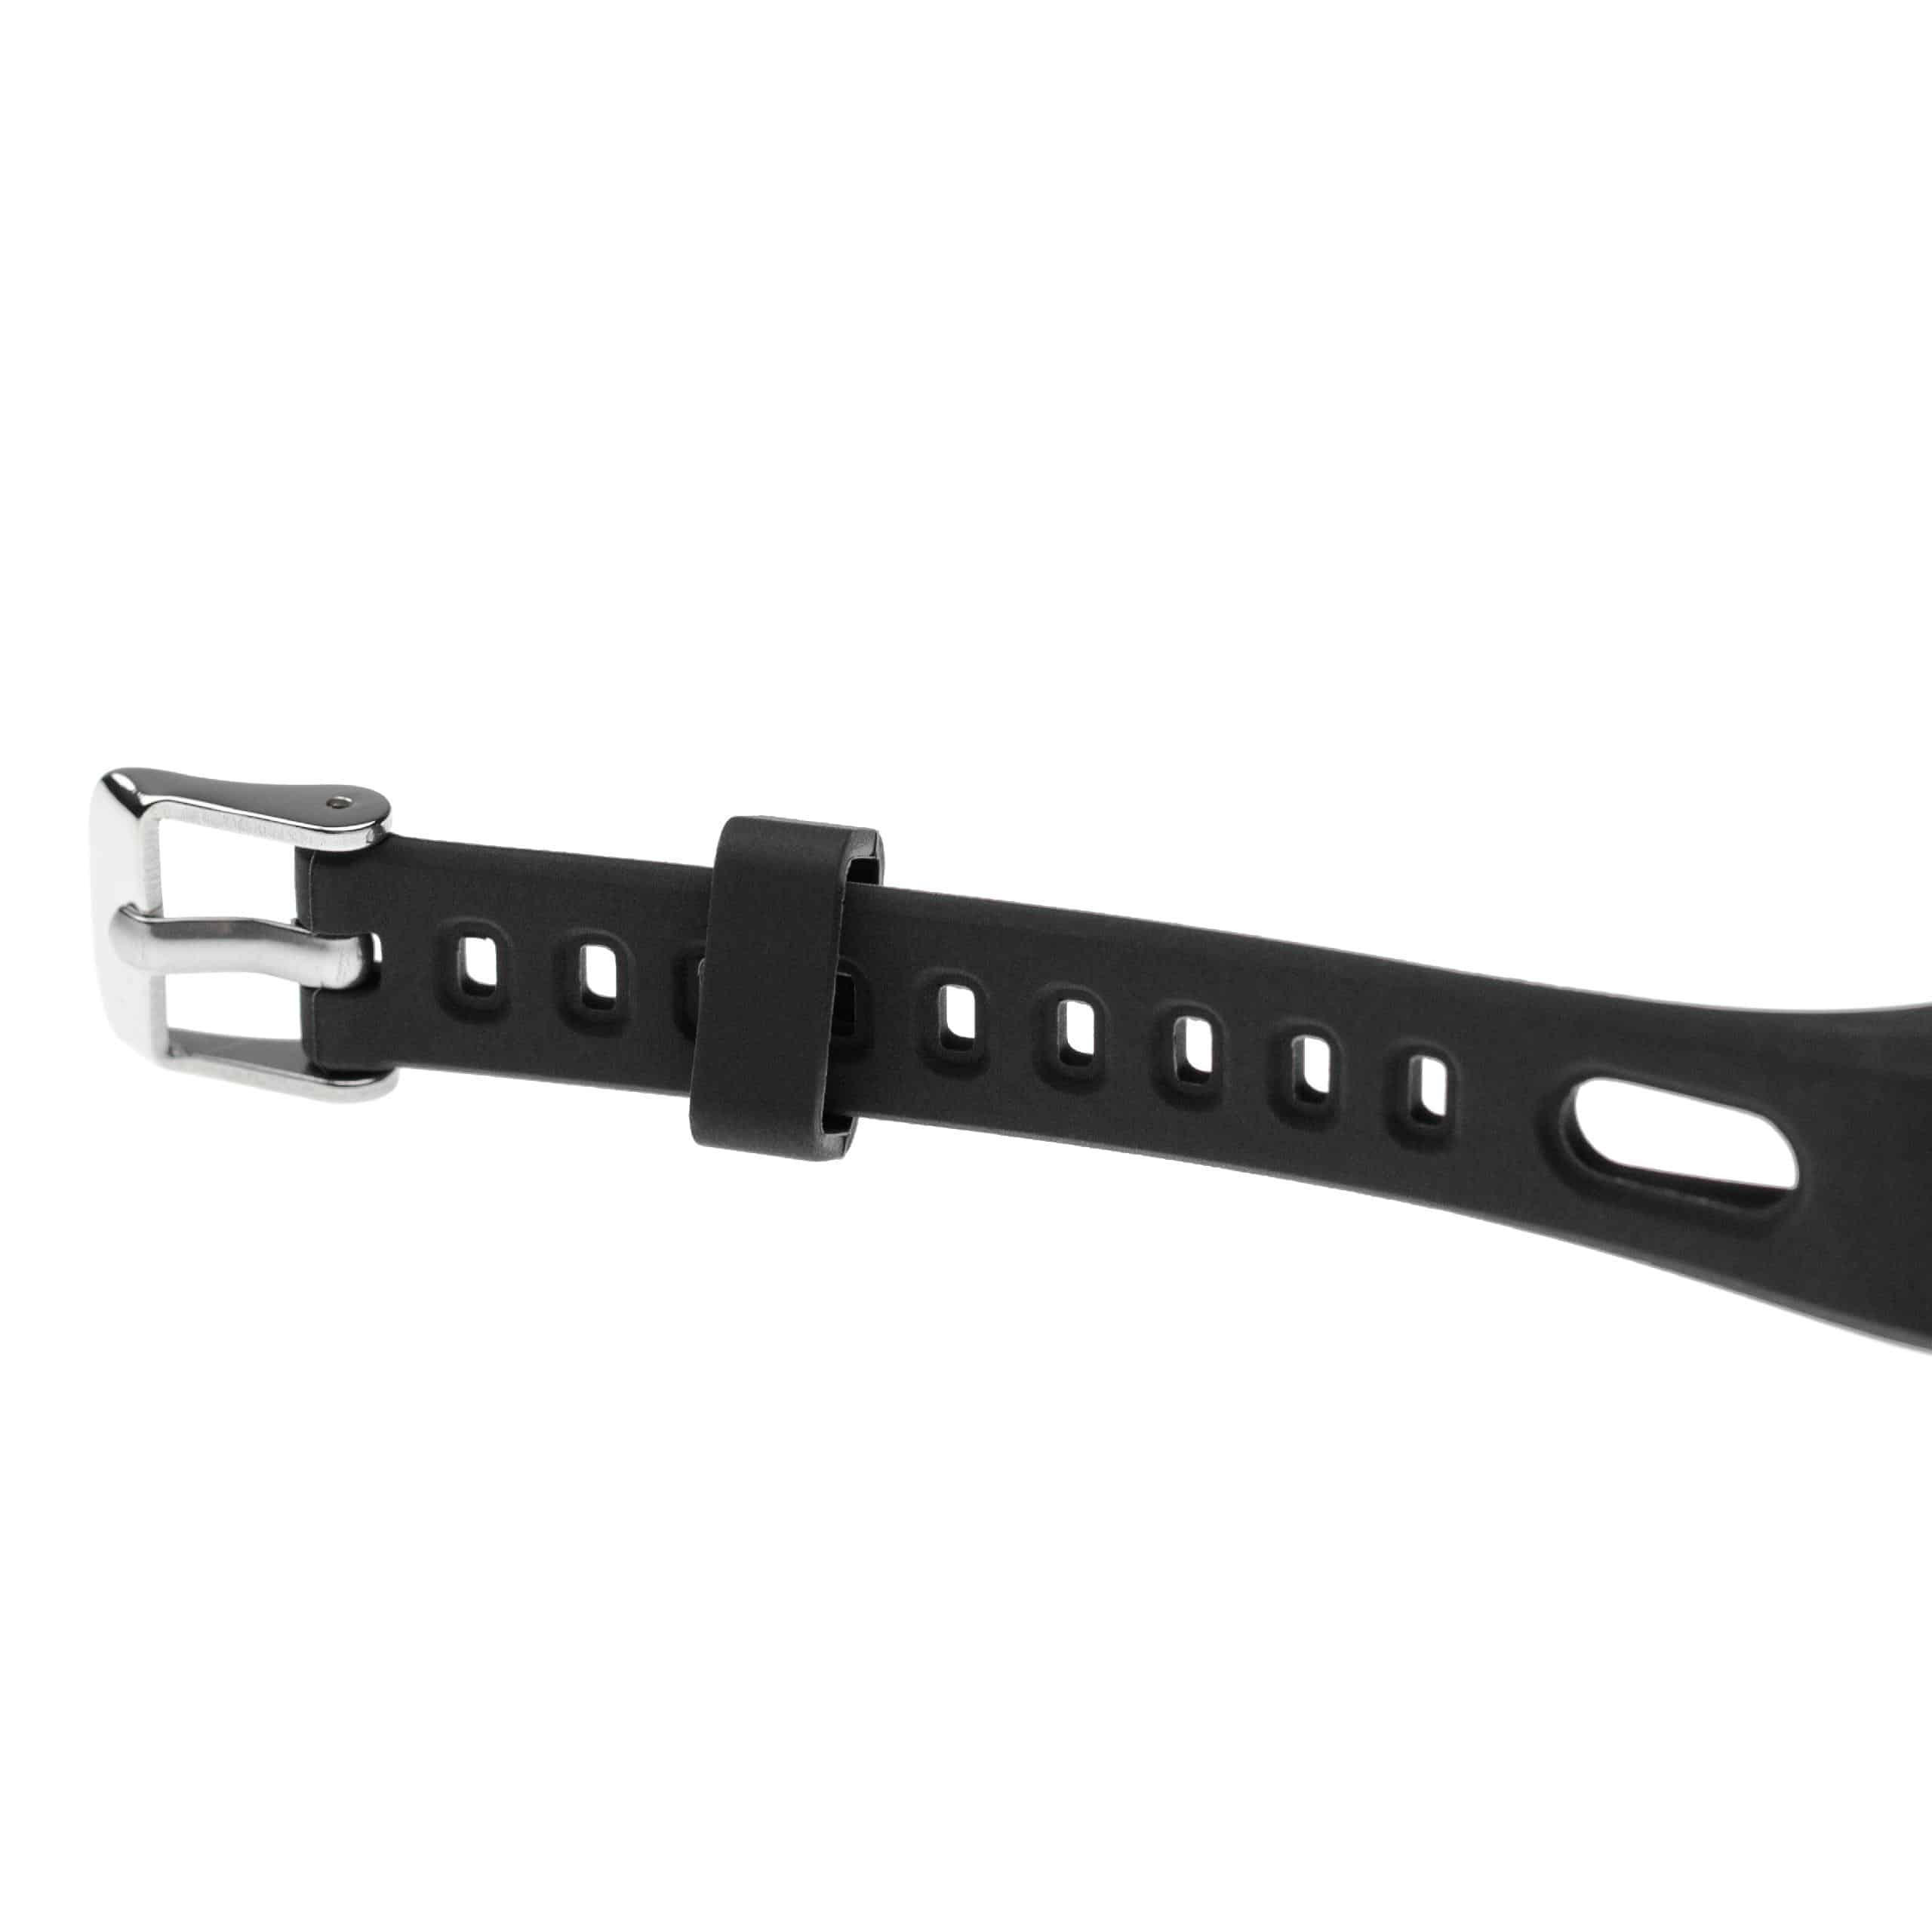 Bracelet pour montre intelligente Huawei Honor / Running - 20,1 cm de long, 40mm de large, silicone, noir